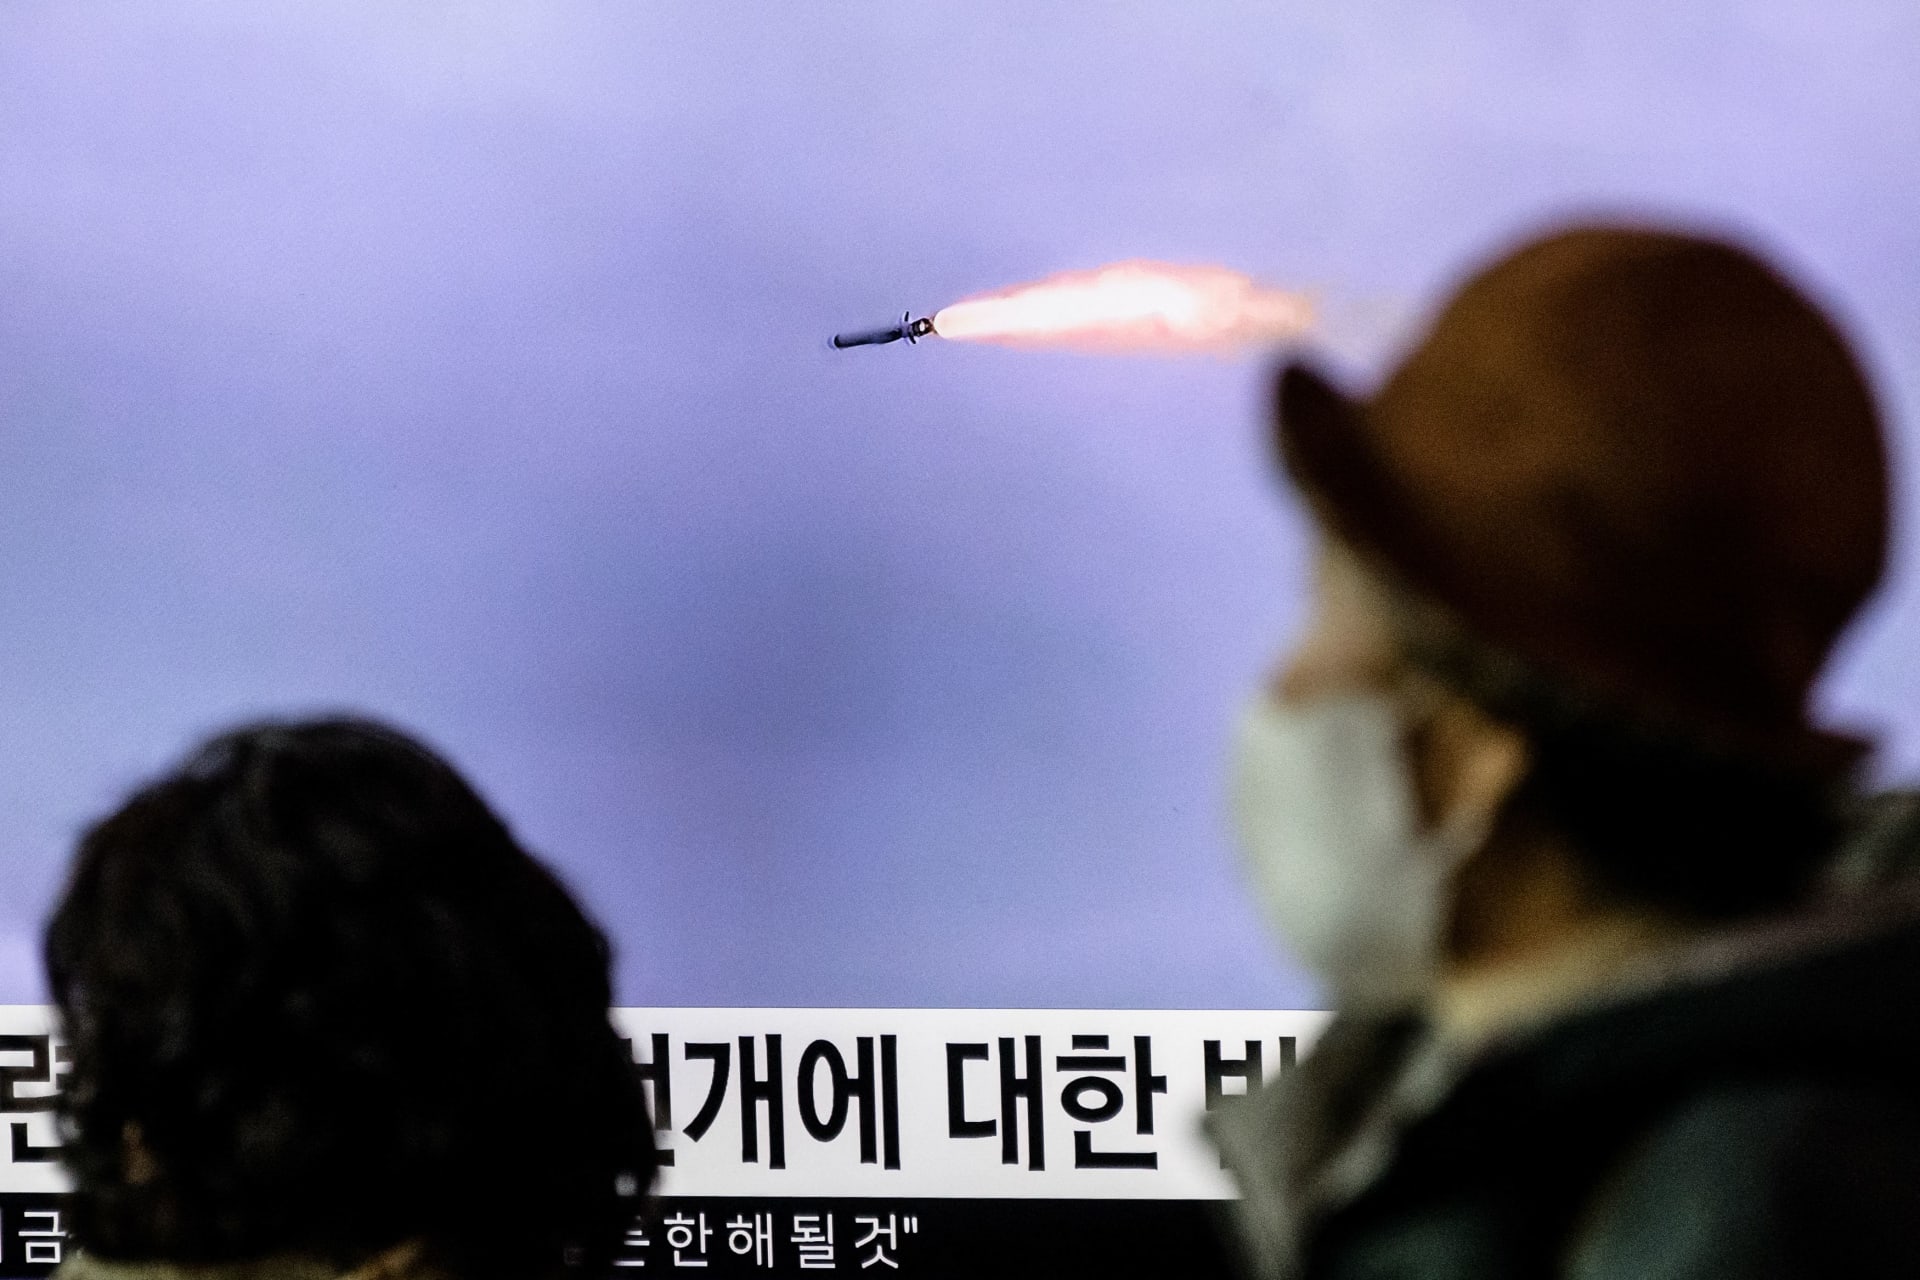 زعيم كوريا الشمالية يدعو لبناء "قوة نووية تتجاوز الخيال جاهزة للهجوم"